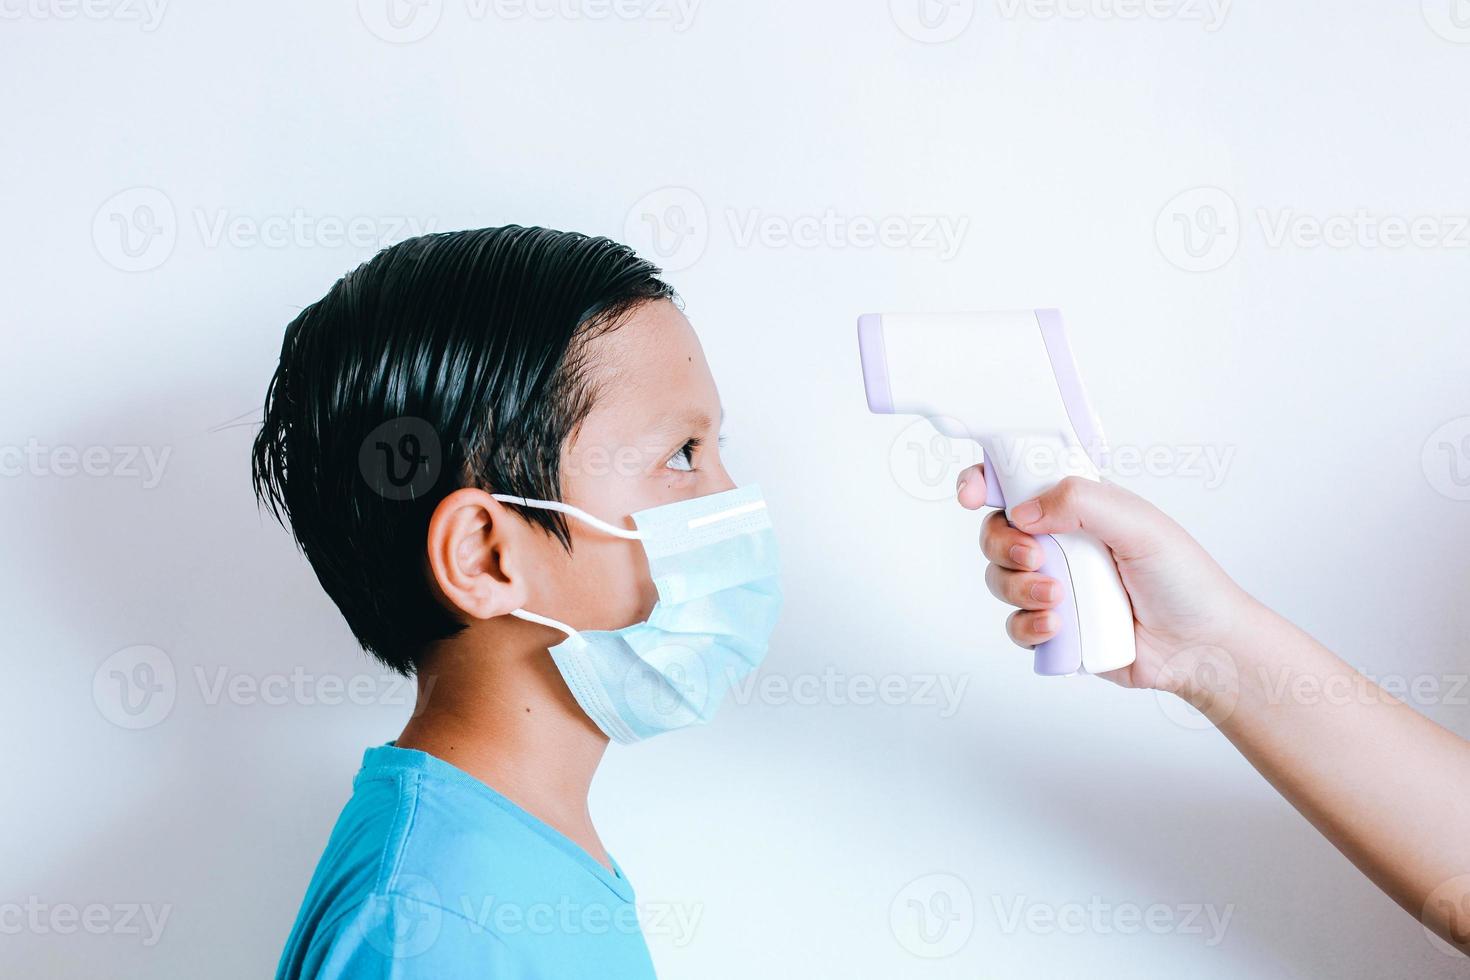 mão segurando o termômetro infravermelho medindo a temperatura do menino com máscara médica no rosto foto